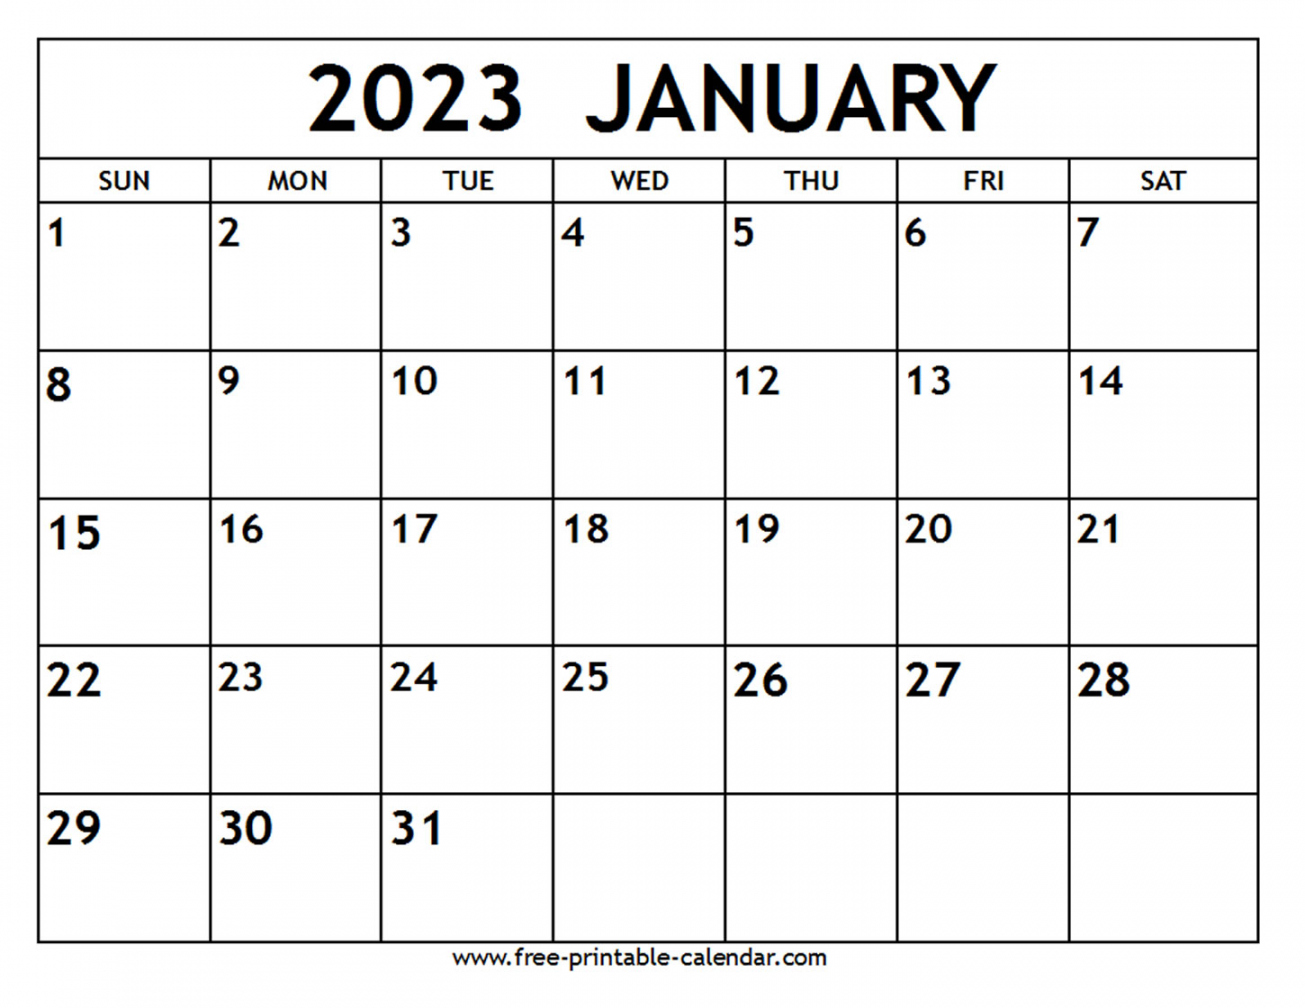 Free Printable January 2023 Calendar - Printable - January  Calendar - Free-printable-calendar